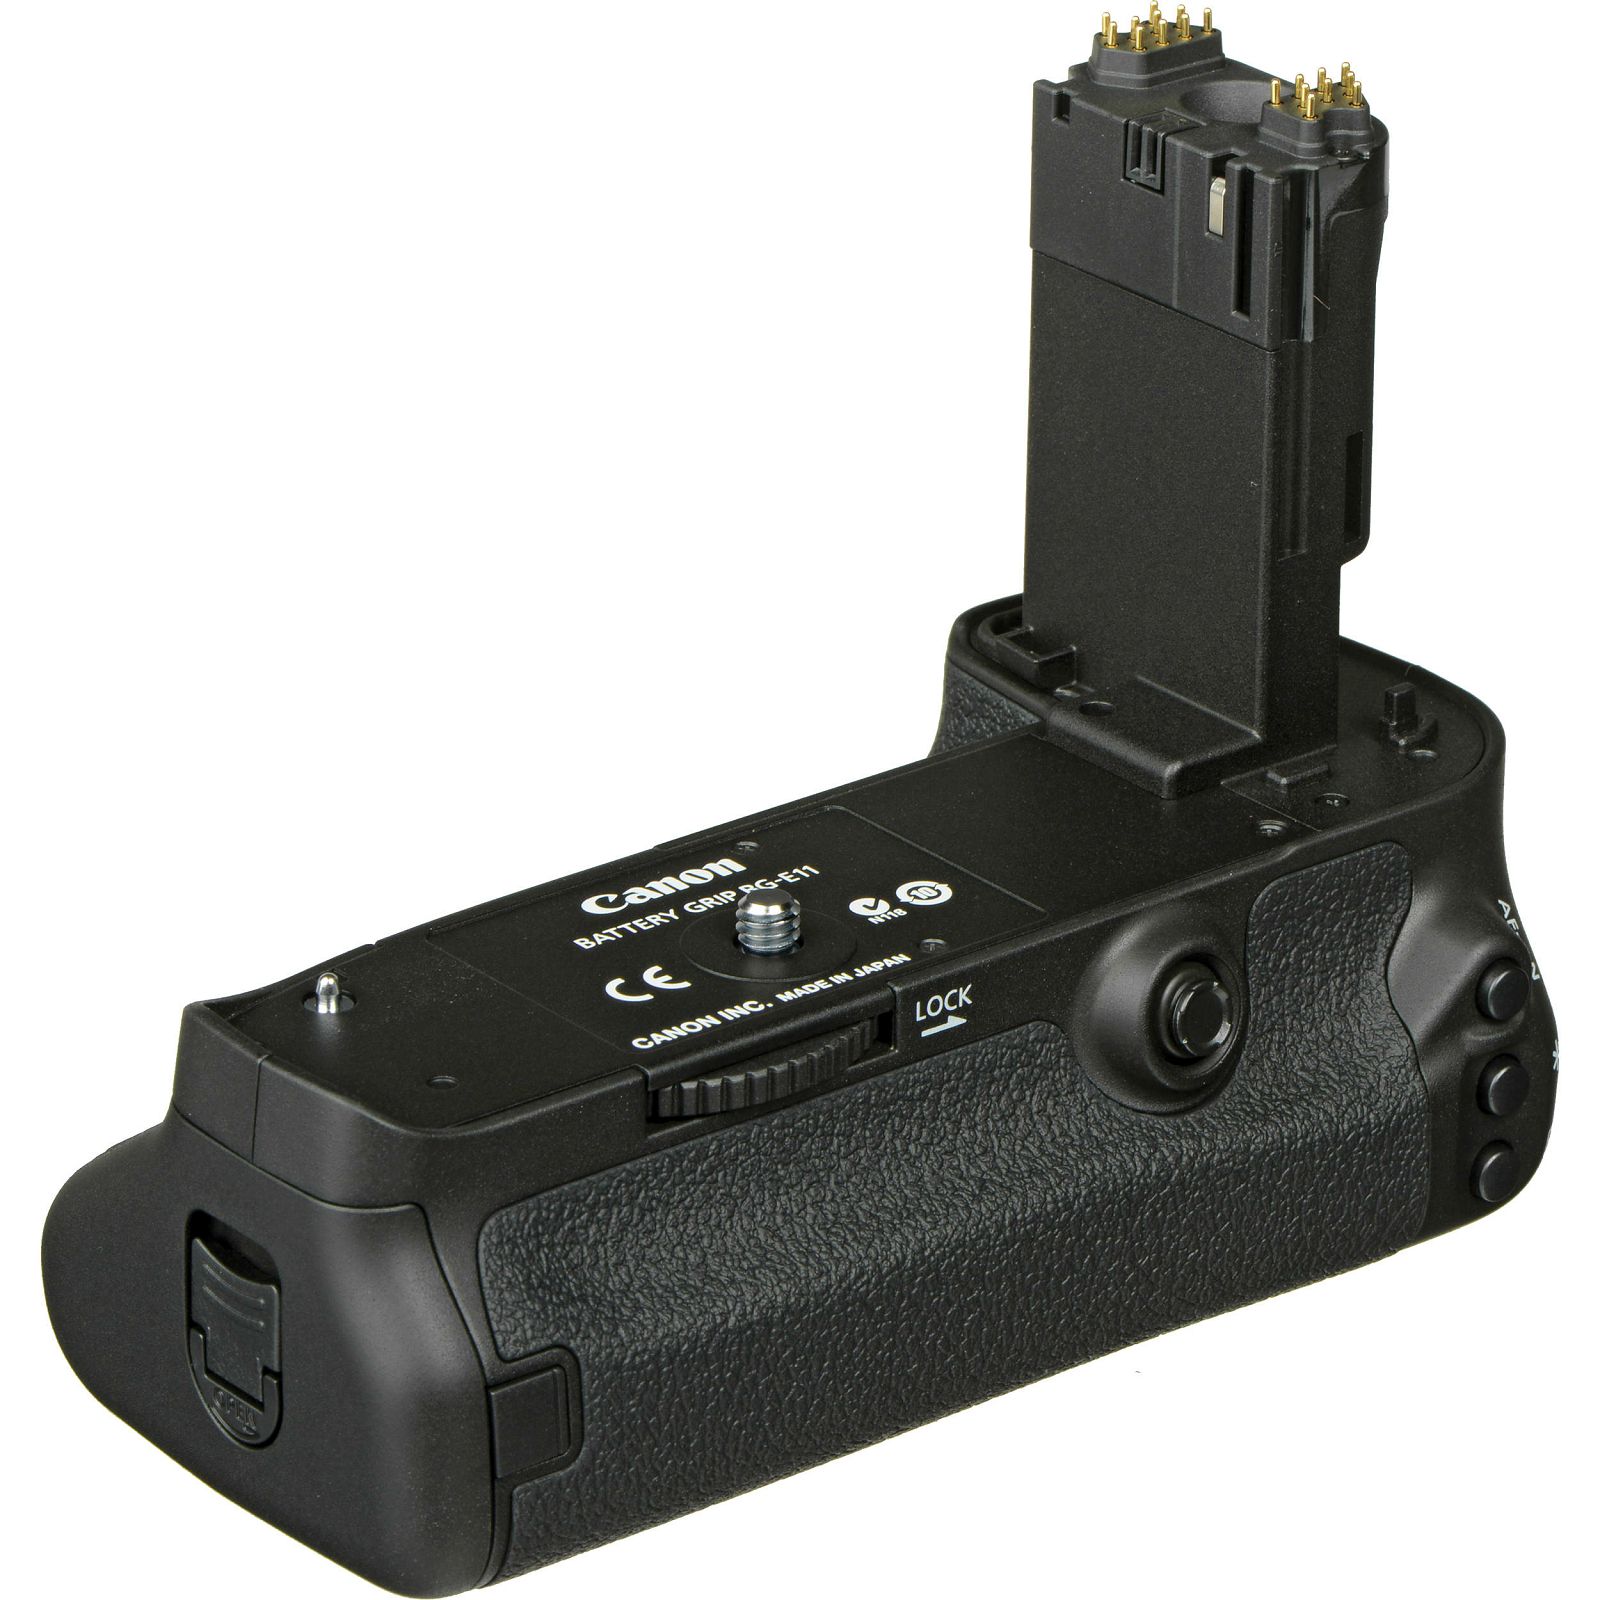 Canon BG-E11 Battery Grip for EOS 5D Mark III, 5DS, 5DS R držač baterija (AC5261B001AA)